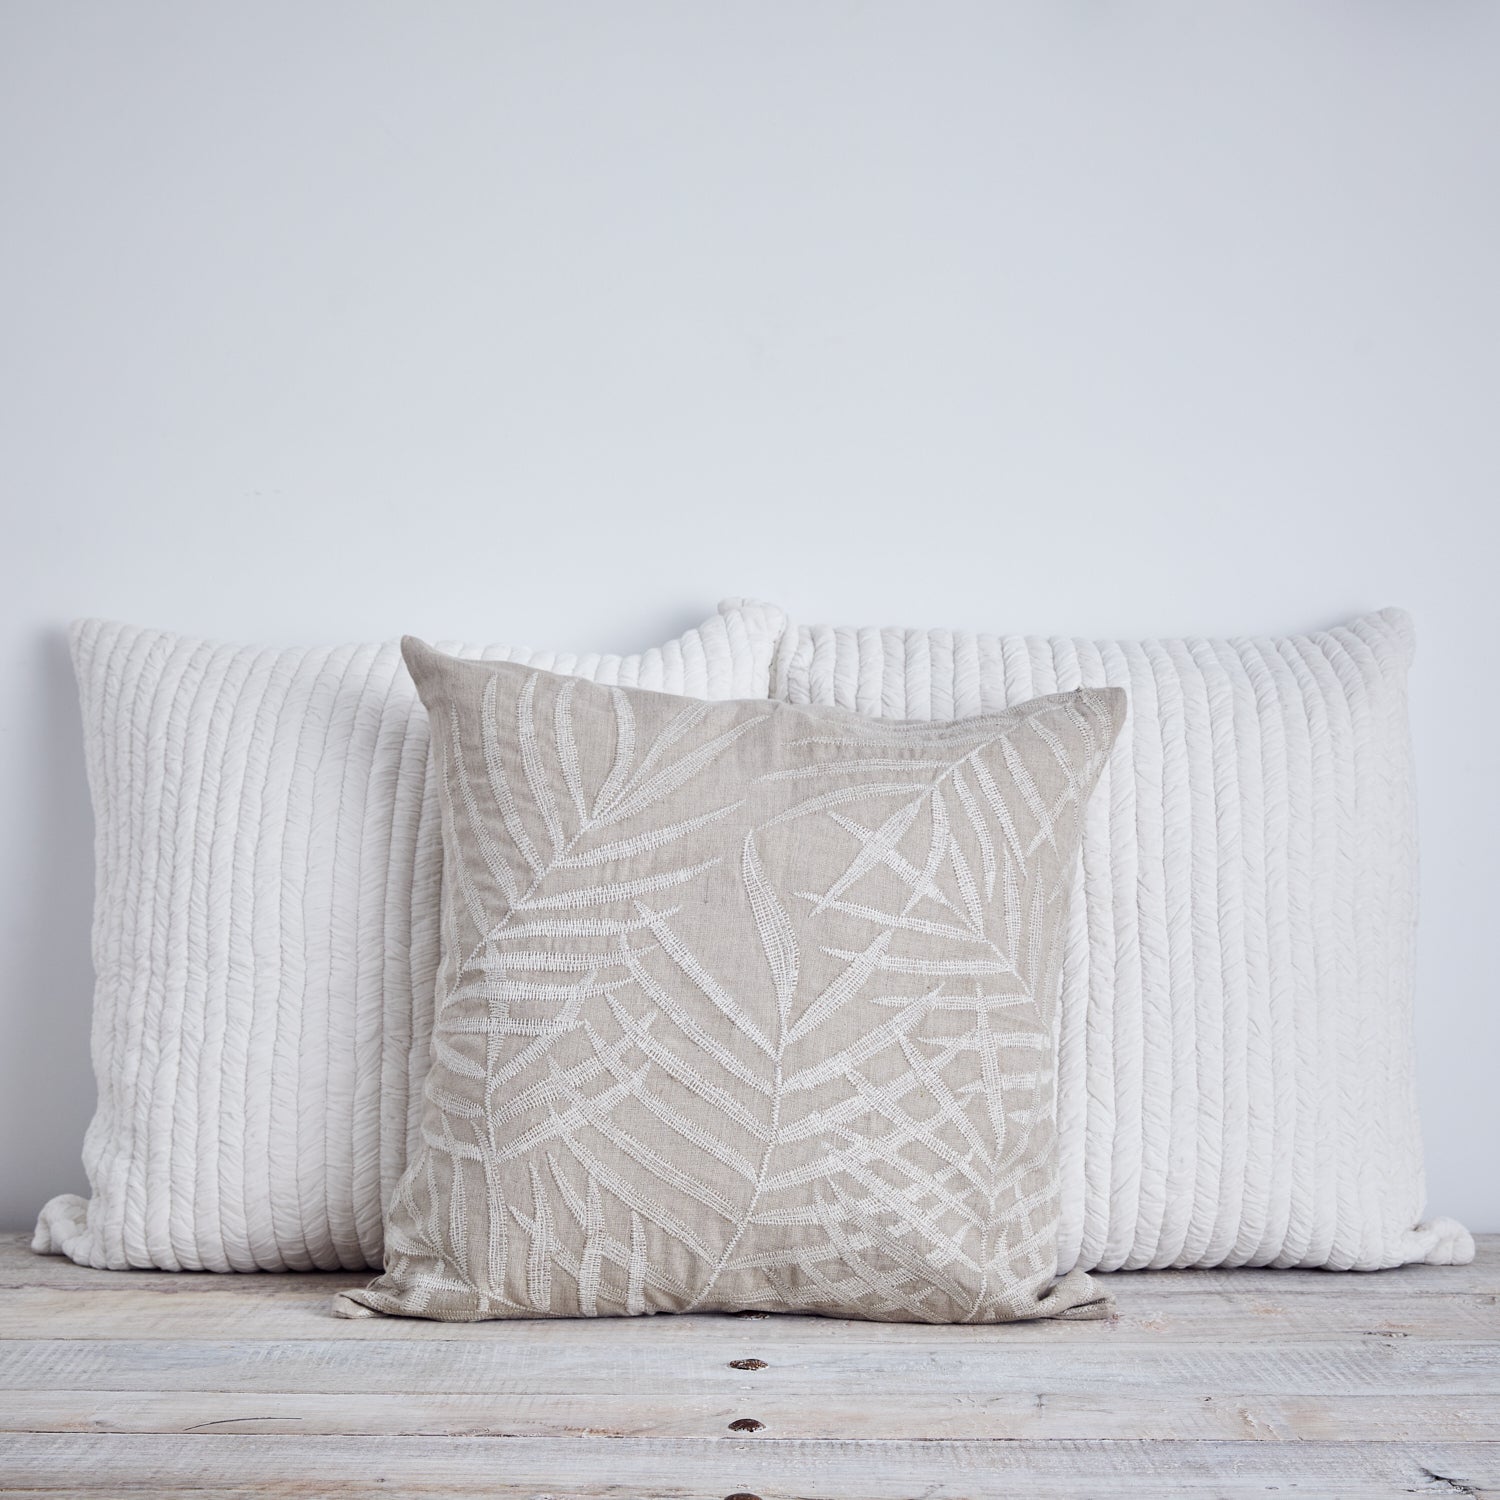 Raining palms cushion - White